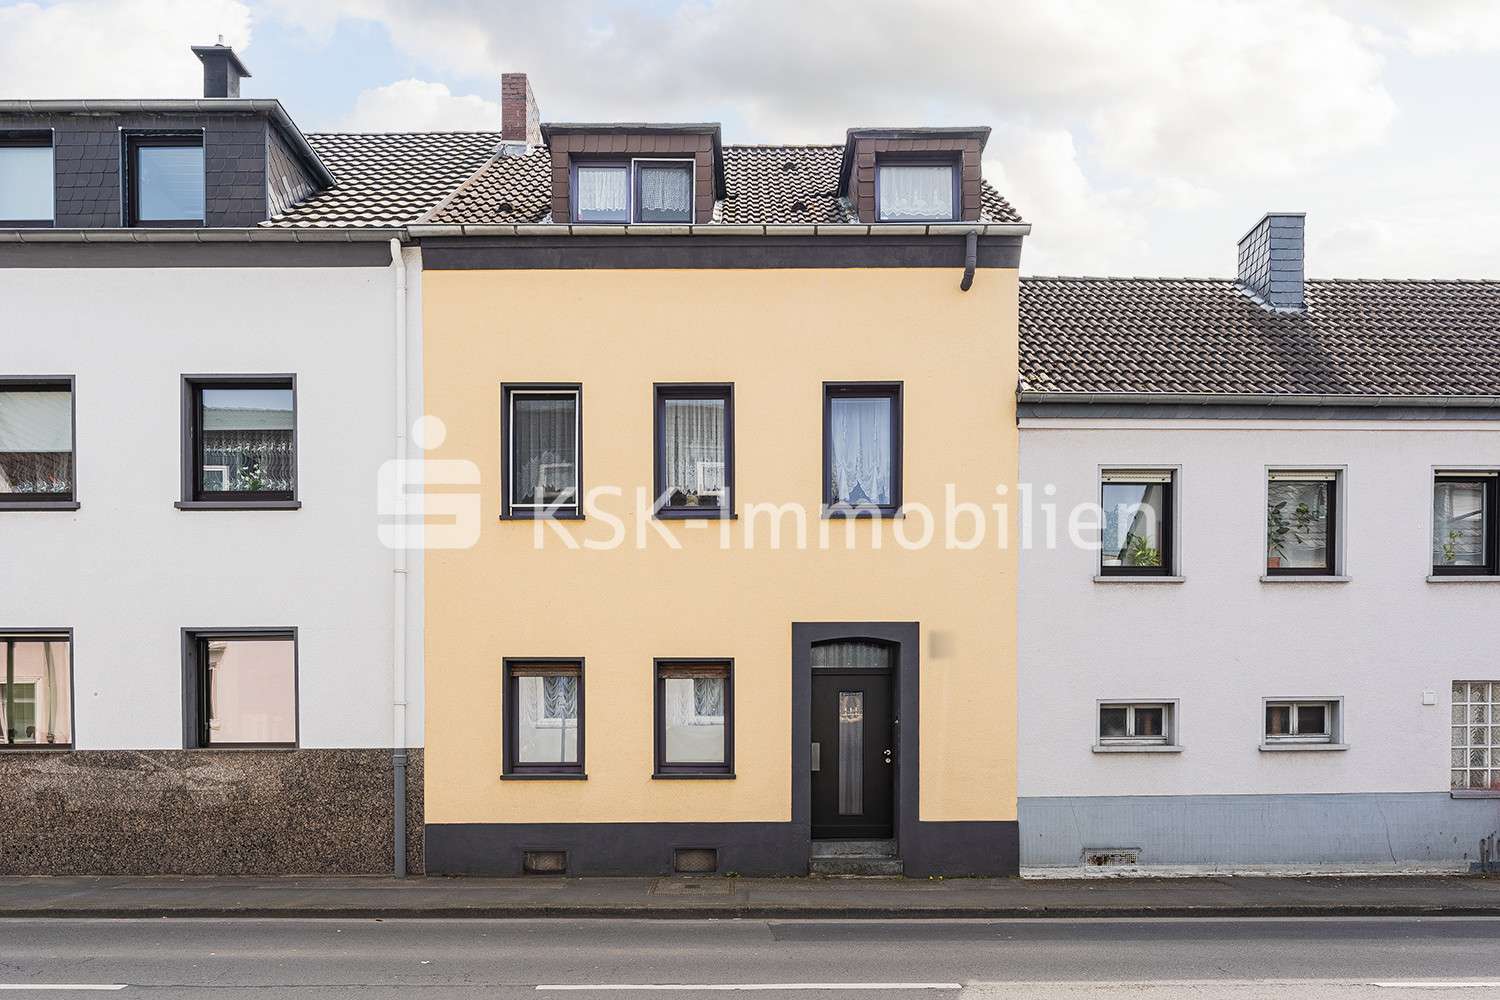 115272 Vorderansicht - Haus in 51067 Köln mit 202m² kaufen